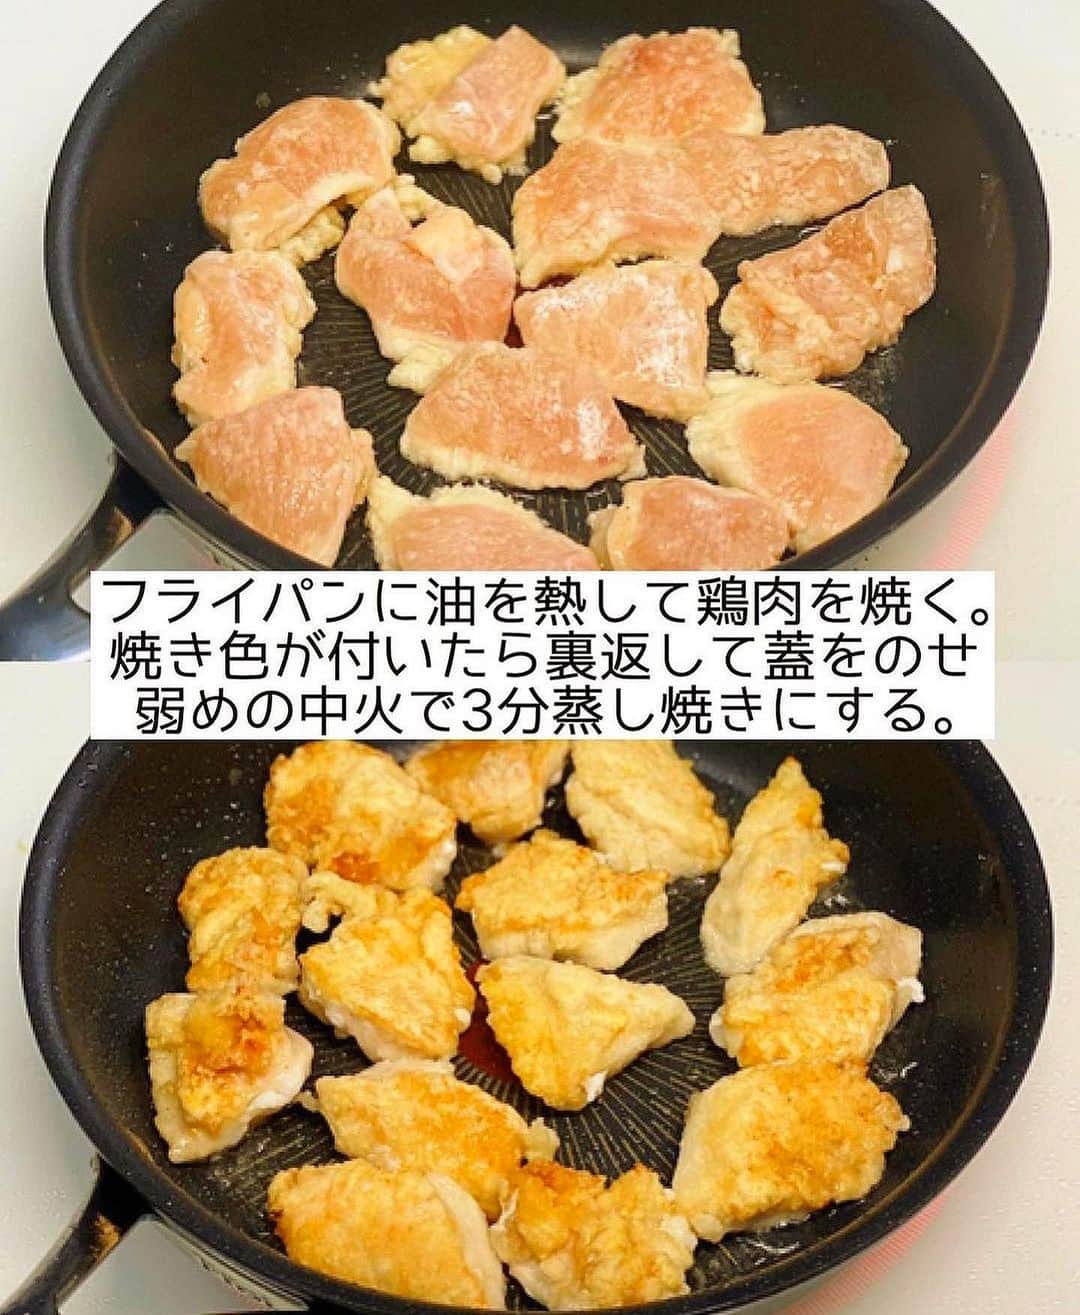 Mizuki【料理ブロガー・簡単レシピ】さんのインスタグラム写真 - (Mizuki【料理ブロガー・簡単レシピ】Instagram)「・鶏むね肉のコスパおかず💕 ⁡ ［#レシピ ］ ーーーーーーーーーーーーーーーーーーーーー 鶏むね肉とブロッコリーのオーロラソース和え ーーーーーーーーーーーーーーーーーーーーー ⁡ ⁡ ⁡ おはようございます☺️ ⁡ 今日ご紹介させていただくのは 鶏むね肉のコスパおかず❣️ \ オーロラソース和え /  (再掲載✨) ⁡ 淡白な鶏むね肉に まったり甘めのソースが相性抜群💕 パサつきなしでしっとり仕上がる おすすめのレシピです🙌 ⁡ 今回はブロッコリーもプラスして バランスよく仕上げましたよ〜♩ とっても簡単にできるので よかったらお試し下さいね😋 ⁡ 💬 昨日は宇宙な話しにお付き合いいただいて ありがとうございました😂 ⁡ 【簡単・時短・節約レシピ更新中🔻】 @mizuki_31cafe ⁡ ⁡ ⁡ ＿＿＿＿＿＿＿＿＿＿＿＿＿＿＿＿＿＿＿ 【2人分】 鶏むね肉...1枚(250g) ●酒...小2 ●塩こしょう...少々 片栗粉...適量 ブロッコリー...1/2個(100g) サラダ油...大1 ☆ケチャップ・マヨネーズ...各大2 ☆砂糖...小1/2 ☆塩こしょう...少々 ⁡ 1.ブロッコリーは小房に分け、耐熱ボウルに入れて水大1(分量外)を振り、ふんわりラップして600Wのレンジで2分加熱する。鶏むね肉はフォークで刺して1cm厚さの削ぎ切りにし、●を揉み込み片栗粉をまぶす。 2.フライパンにサラダ油を中火で熱して鶏肉を焼く。焼き色が付いたら裏返し、蓋をして弱めの中火で3分蒸し焼きにする。 3.ボウルに☆を入れて混ぜ、水気を切ったブロッコリーと2を加えて和える。 ￣￣￣￣￣￣￣￣￣￣￣￣￣￣￣￣￣￣￣ ⁡ ⁡ 《ポイント》 ♦︎ブロッコリーの茎も加える場合は小さめに切って下さい♩ ♦︎鶏むね肉だけにオーロラソースをからめ、キャベツやレタスの千切りにのせても◎ ⁡ ⁡ ⁡ ⁡ ⁡ 𖤣𖥧𖥣𖡡𖥧𖤣✨ 愛用している調理器具や器などは #楽天ROOMに載せてます ‎𐩢𐩺 (ハイライトから飛べます🛍) ⁡ ⁡ ⁡ ⁡ ⁡ 🔶全国の書店・ネット書店で発売中🔶 ⁡ ✼••┈┈┈┈┈••✼••┈┈┈┈┈••✼ 今日のごはんこれに決まり！ ‎𓊆#Mizukiのレシピノート 500品𓊇 ✼••┈┈┈┈┈••✼••┈┈┈┈┈••✼ ⁡ ˗ˏˋ おかげさまで23万部突破 ˎˊ˗ 料理レシピ本大賞準大賞を受賞しました🙇‍♀️ ⁡ 6000点の中からレシピを厳選し まさかの【500レシピ掲載】❣️ 肉や魚のメインおかずはもちろん 副菜、丼、麺、スープ、お菓子 ハレの日のレシピ、鍋のレシピまで 全てこの一冊で完結𓌉◯𓇋✨ ⁡ ⁡ ⁡ ✼••┈┈┈••✼••┈┈┈••✼ Mizukiのカンタン手作り   𓊆 #3時のおやつ 𓊇 ✼••┈┈┈••✼••┈┈┈••✼ ⁡ 『3分クッキング』で連載中の 「Mizukiのカンタン手作り」 ‎4年分のおやつが1冊になりました！ ❝オーブンなしで❞ 身近な材料と道具でできる 簡単、手軽なおやつを80品🍪 ⁡ ⁡ ⁡ ⁡ ⁡ ⁡ #鶏むね肉とブロッコリーのオーロラソースm #鶏むね肉 #鶏むね肉レシピ #ブロッコリー  #ブロッコリーレシピ #オーロラソース #とりマヨ #鶏肉レシピ #節約料理 #簡単料理  #時短料理 #料理 #mizukiレシピ  #アルモンデ #時短レシピ #節約レシピ #簡単レシピ」4月19日 6時30分 - mizuki_31cafe